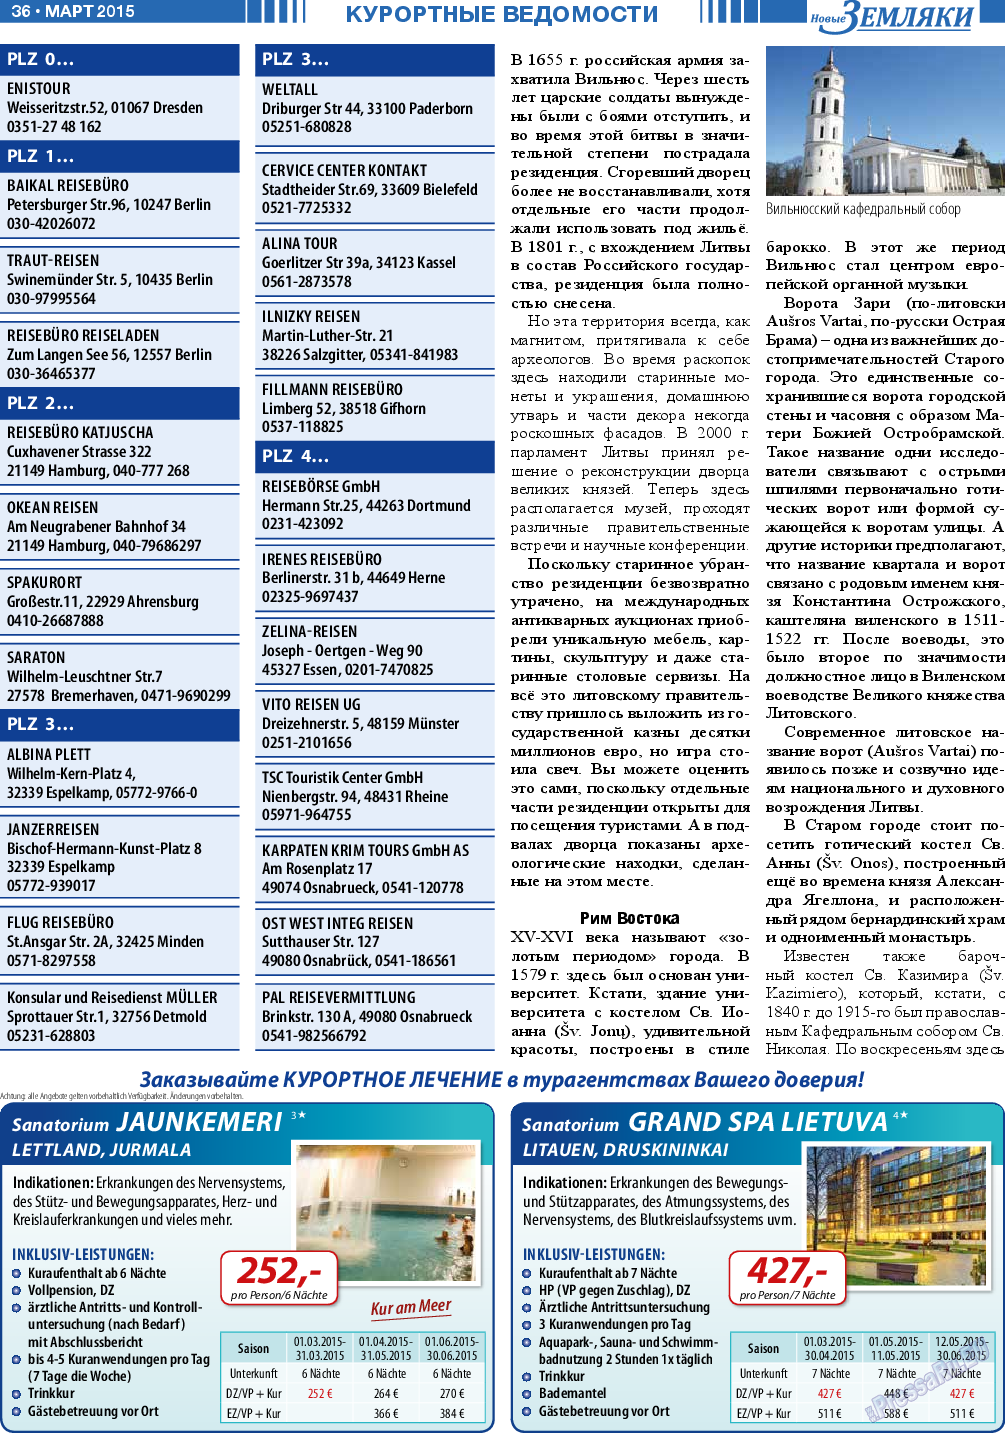 Новые Земляки (газета). 2015 год, номер 3, стр. 36